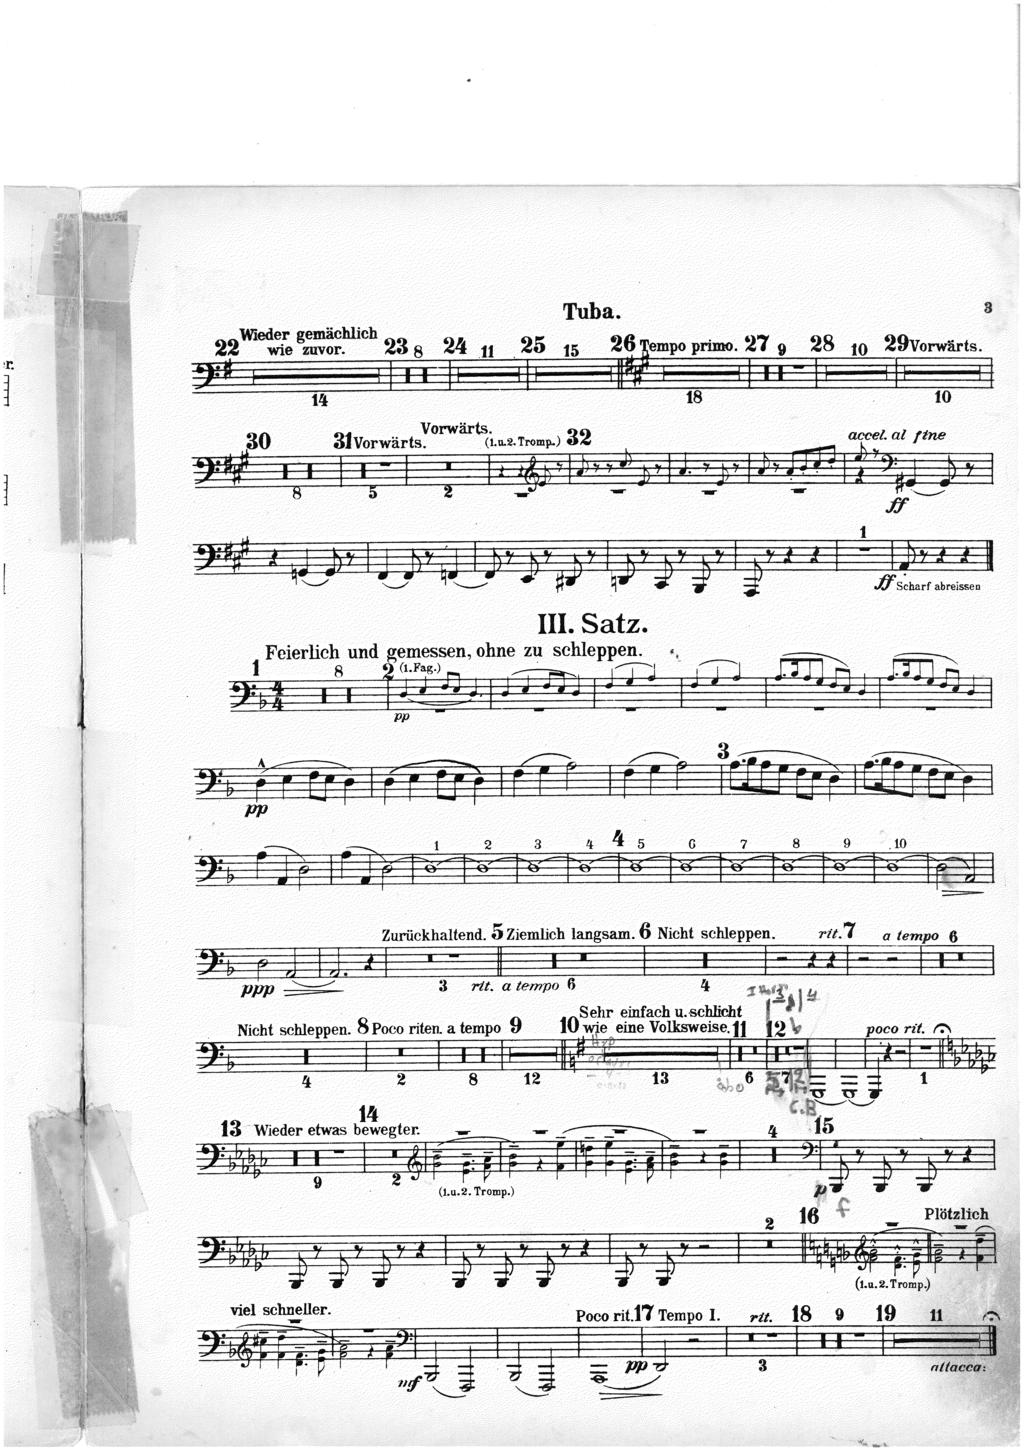 MAHLER Symphony no. 1 Tuba. gemichlich 23 8 2'I:,...11 22Wiede! wie zuvor. l ft6 27 9 ~ lempo primo. 2ur! 15 28 10 29Vorwarts. Symphony no. 2 Movement 5 ~ III. Satz.